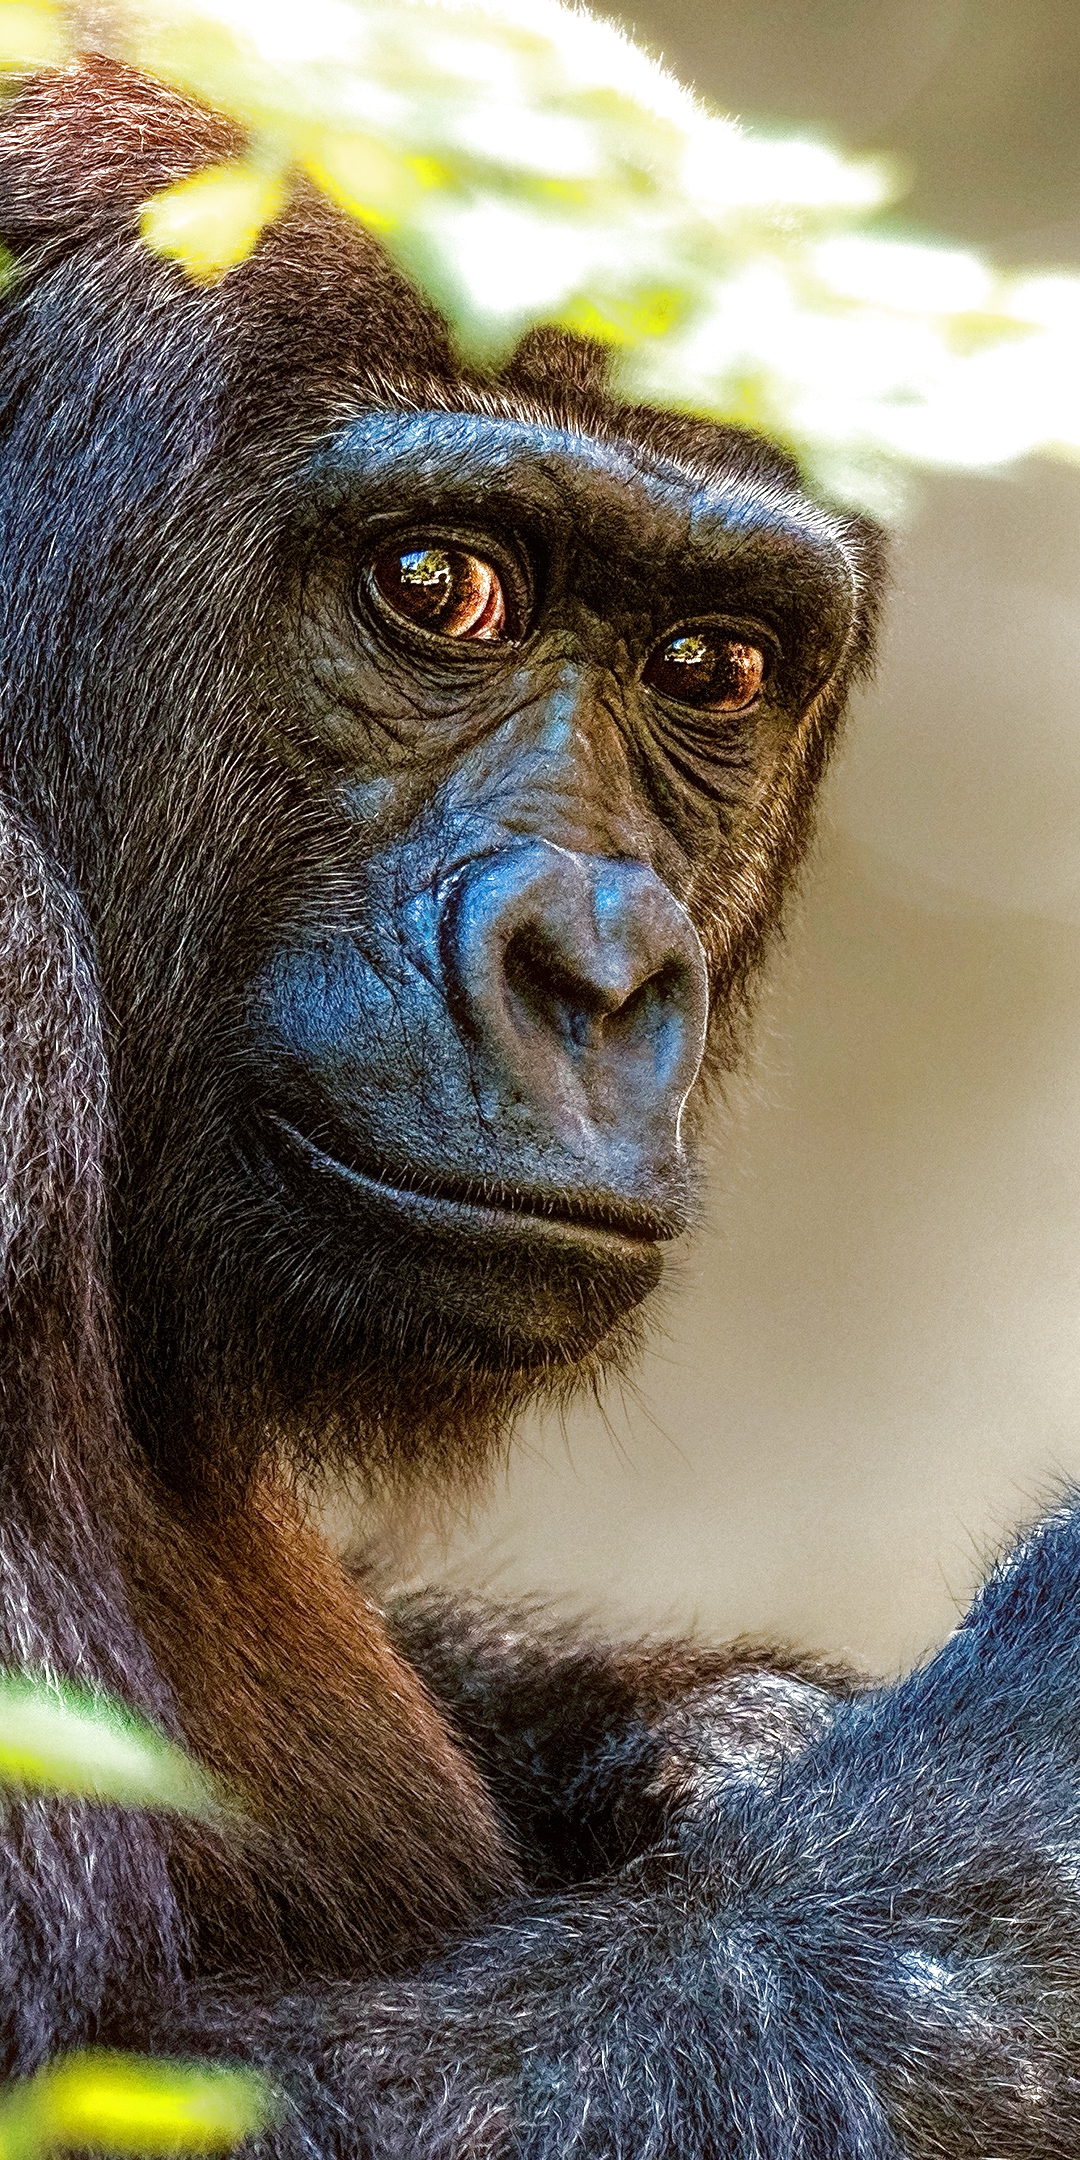 Descarga gratuita de fondo de pantalla para móvil de Animales, Monos, Gorila.